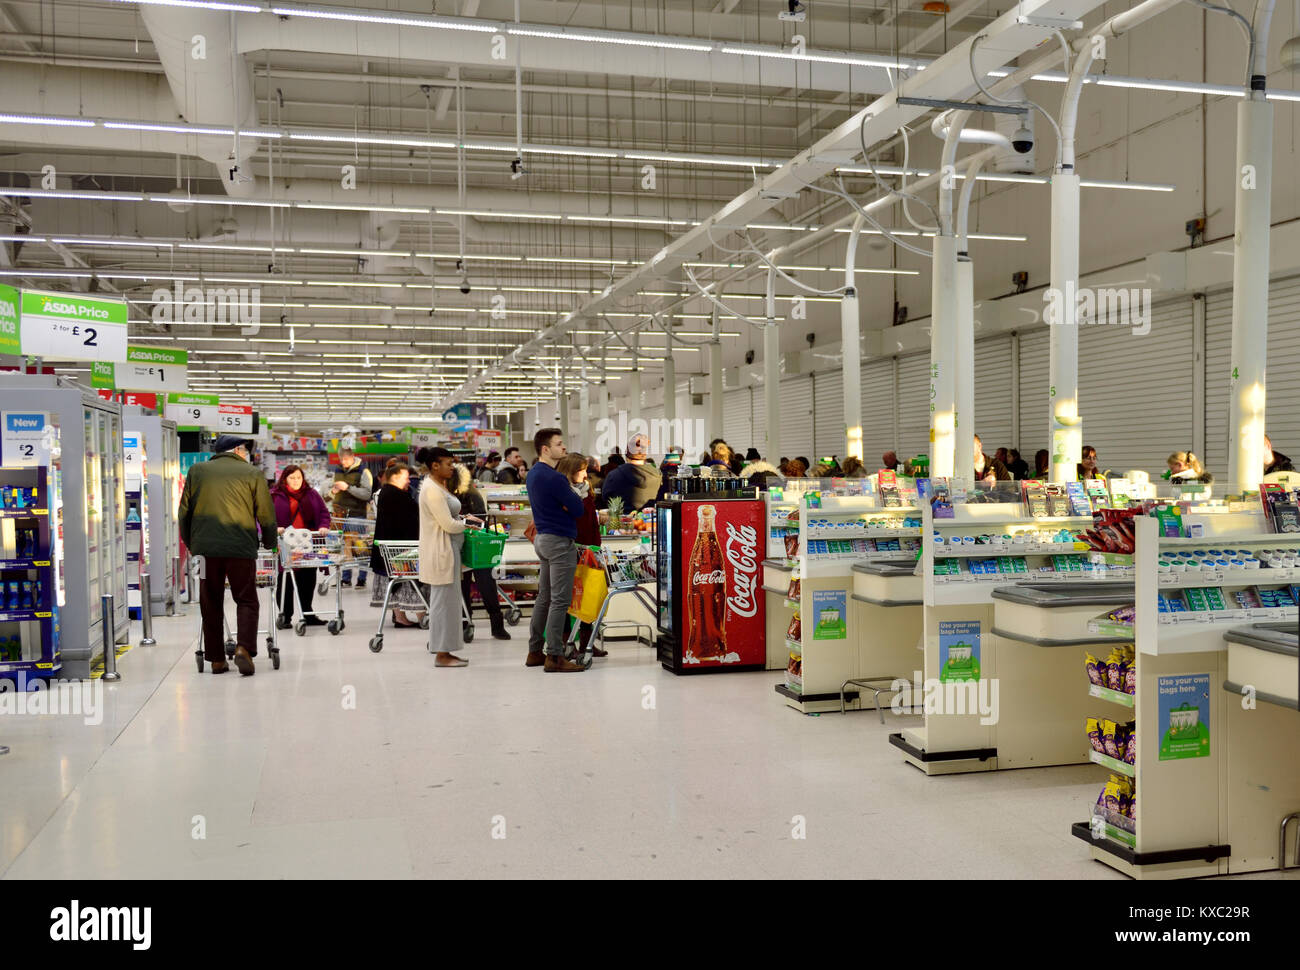 Supermarché occupé check out laboure avec de longues files d'attente de clients avec des rangées de caisses vides, inutilisés UK Banque D'Images